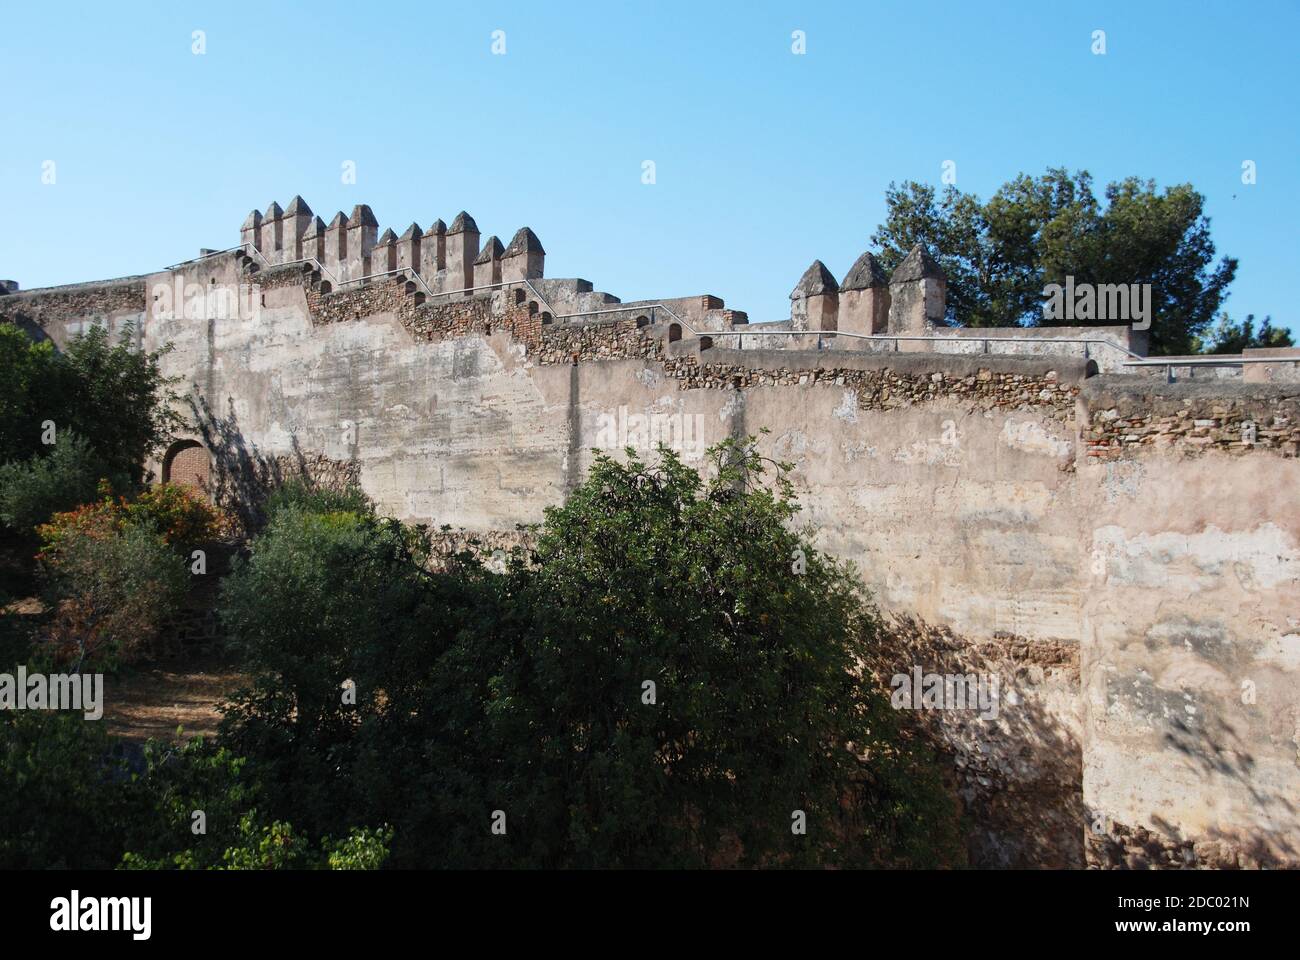 Bastioni del castello di Gibralfaro visti dall'interno del castello, Malaga, Provincia di Malaga, Andalusia, Spagna, Europa occidentale. Foto Stock